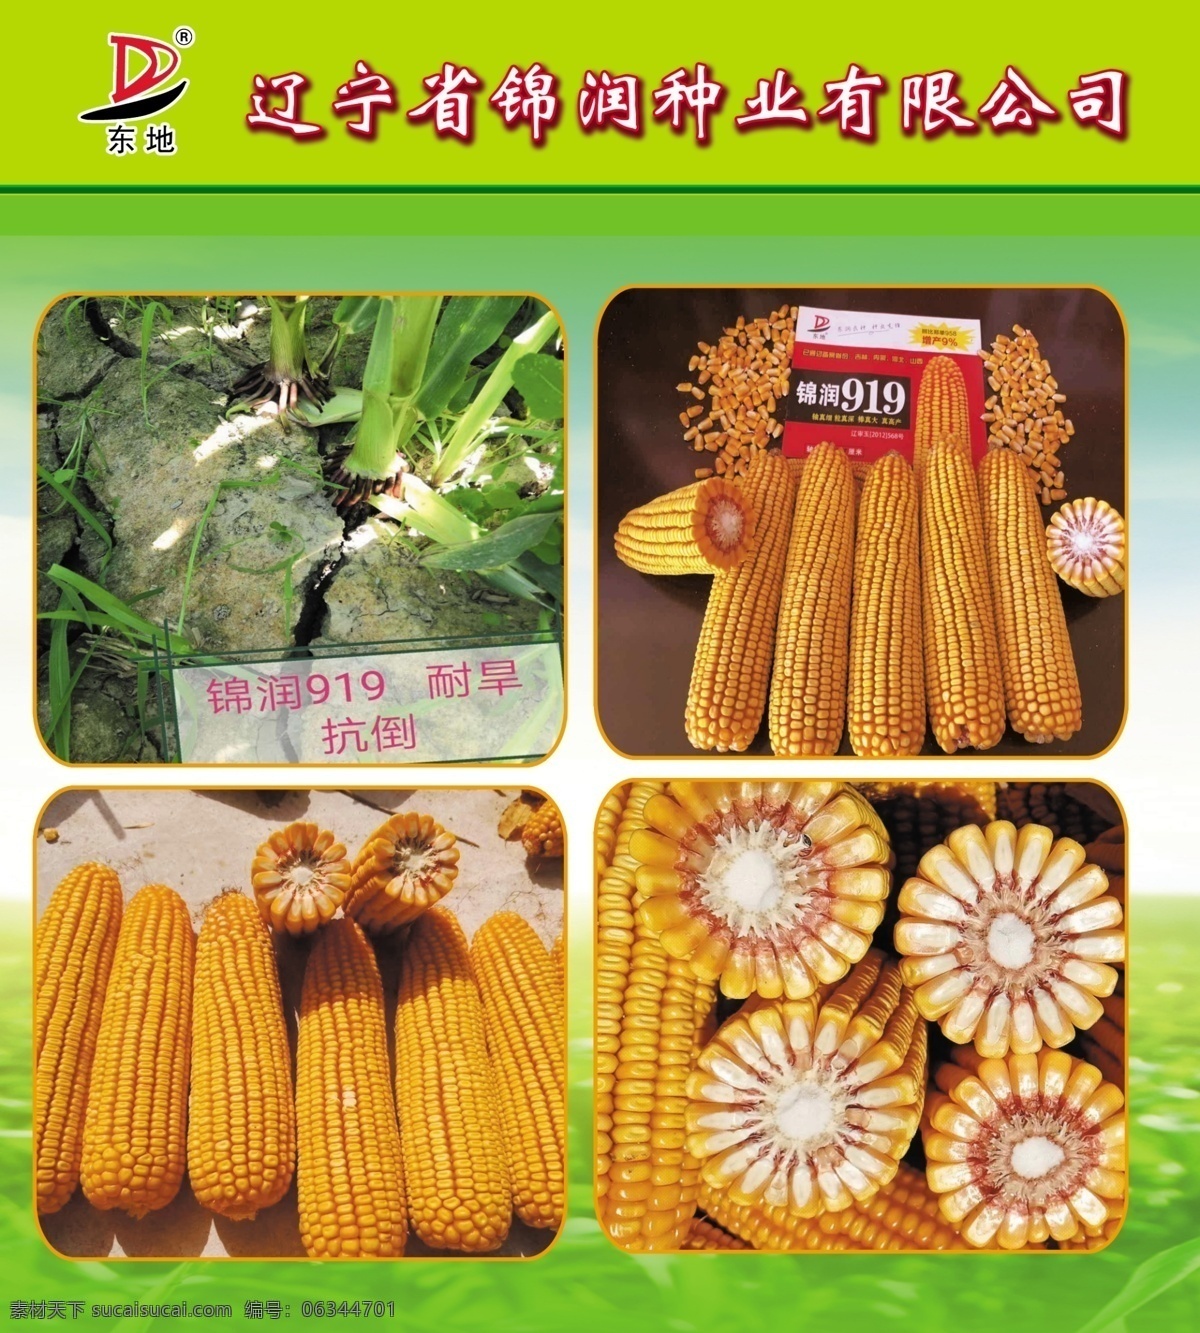 锦 润 玉米 种子 宣传单 玉米种子 多抗品种 产量高 抗旱 抗倒能力强 锦润 锦润种业